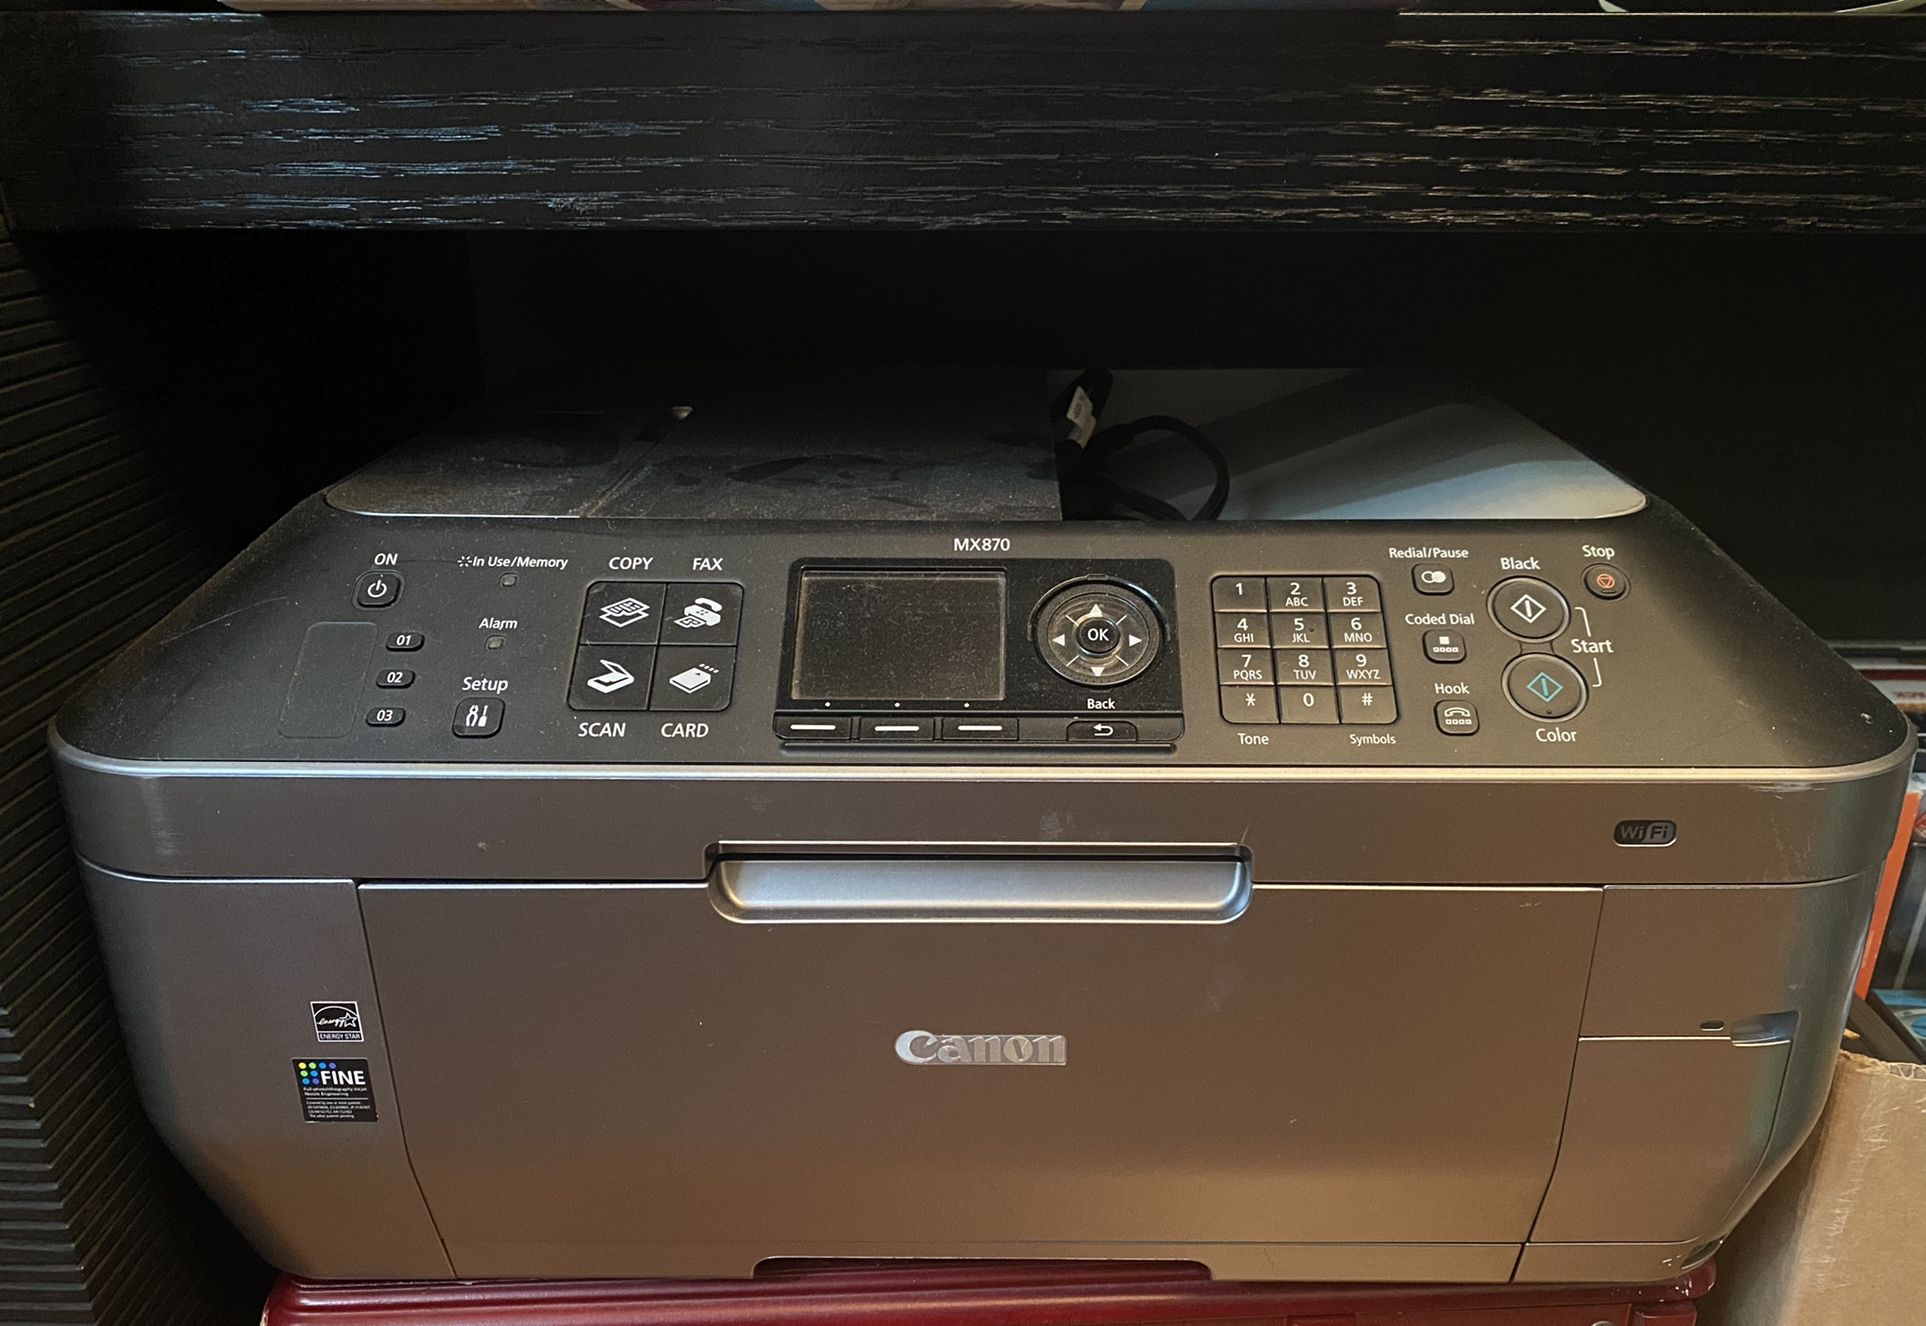 Canon MX870 Color Printer 